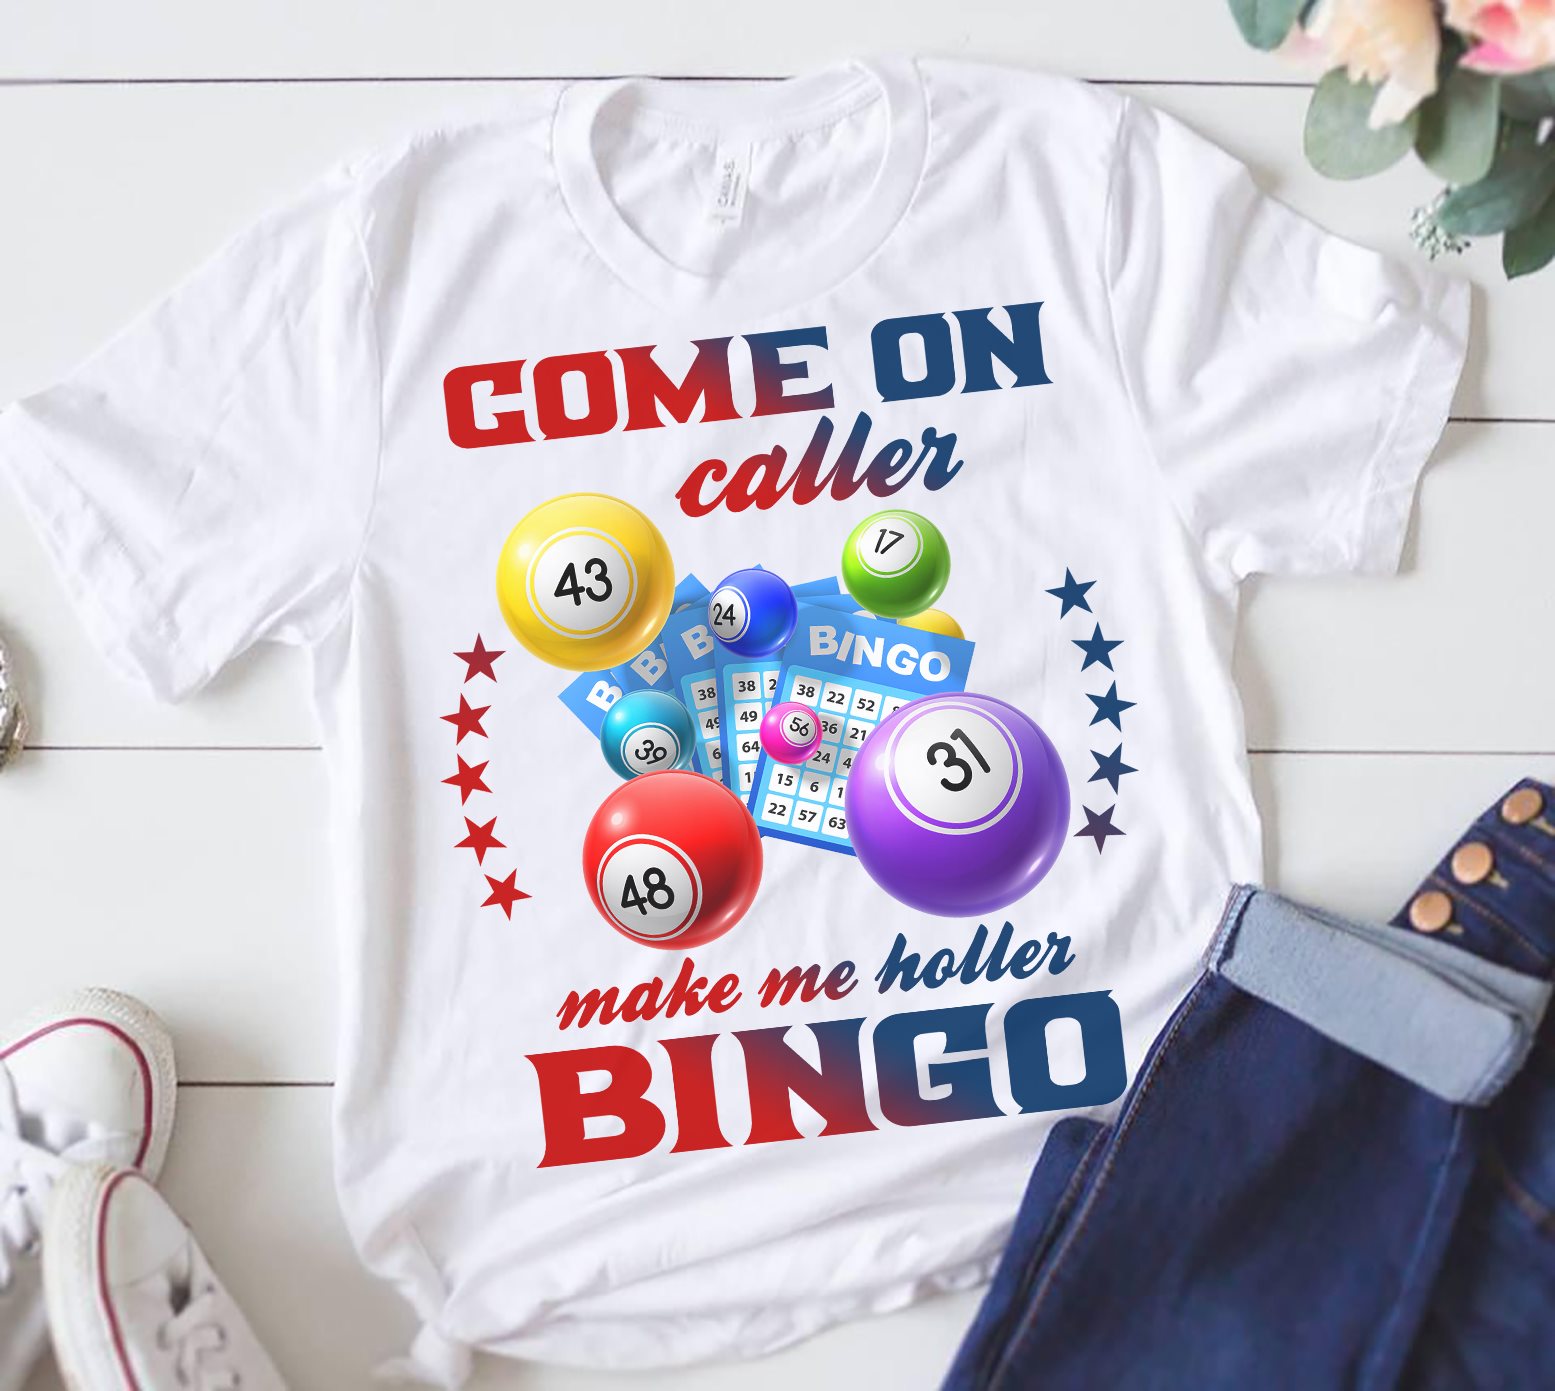 Come one caller make me holler bingo - Bingo game